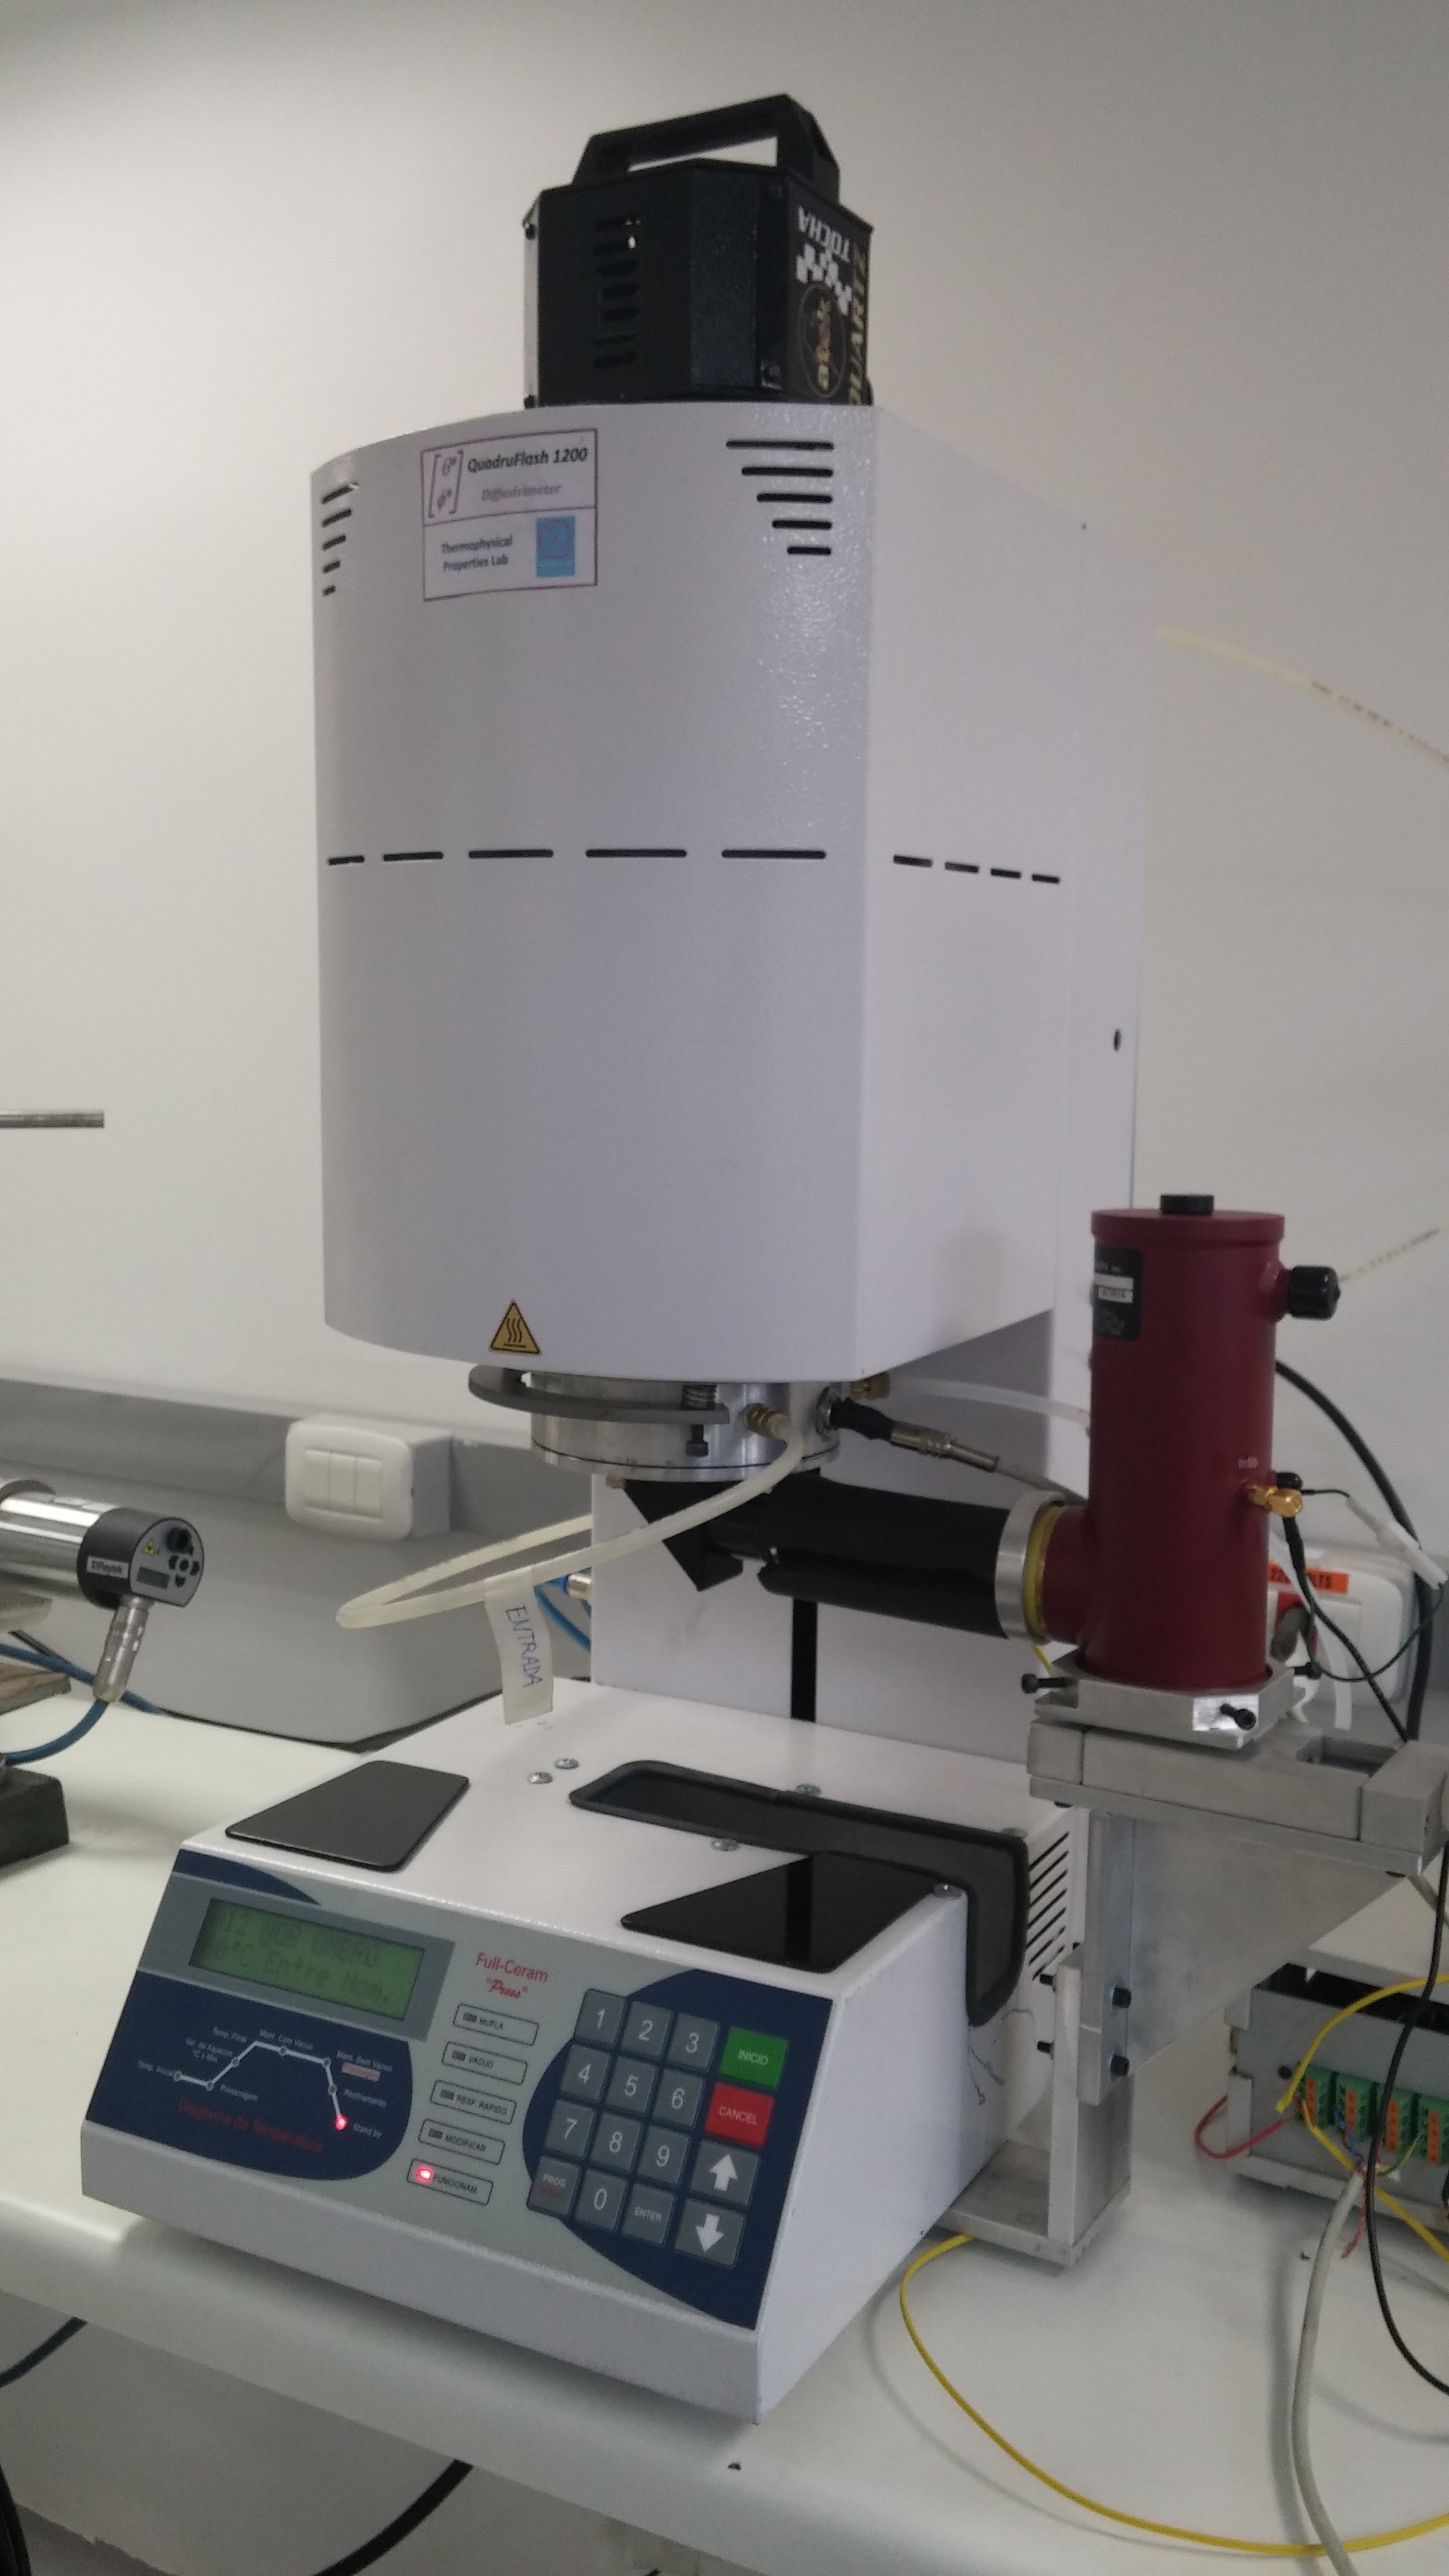 Difusivímetro QuadruFlash 1200 utilizado para a medição da difusividade térmica pelo método Quadrupólo Térmico de materiais líquidos e sólidos (inclusive pós e pastas)